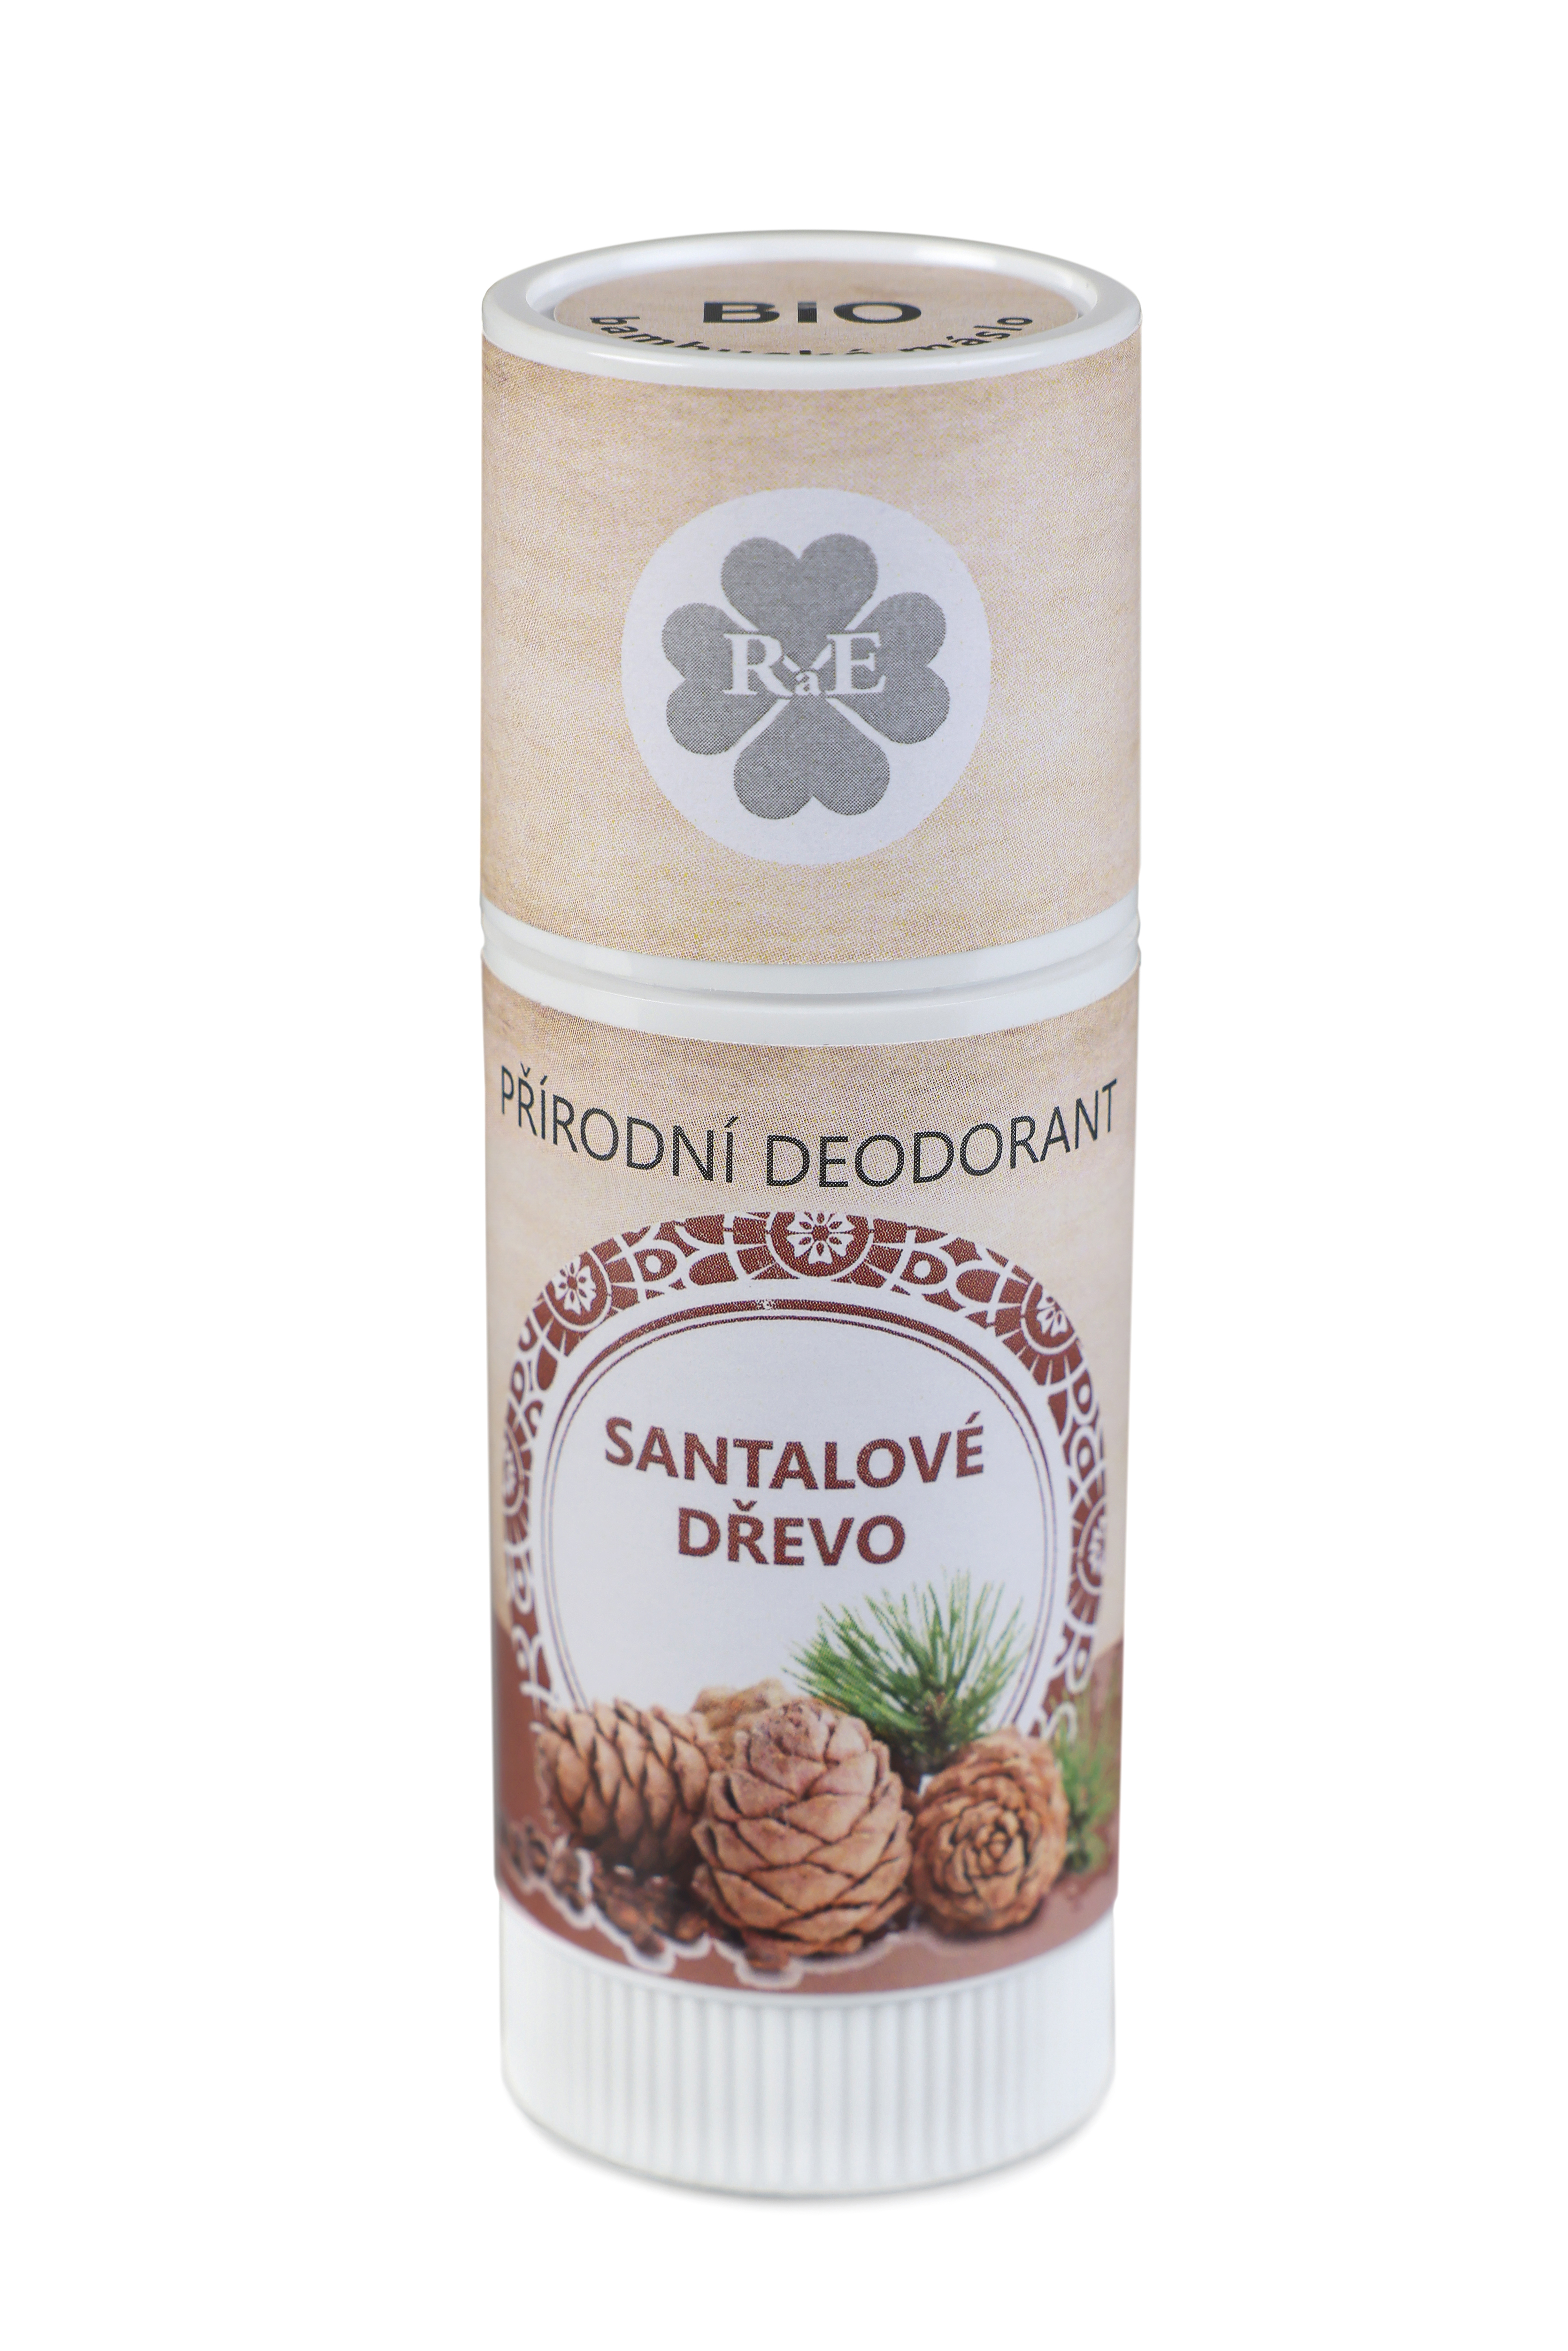 RaE Přírodní deodorant Santalové dřevo tuba 25ml